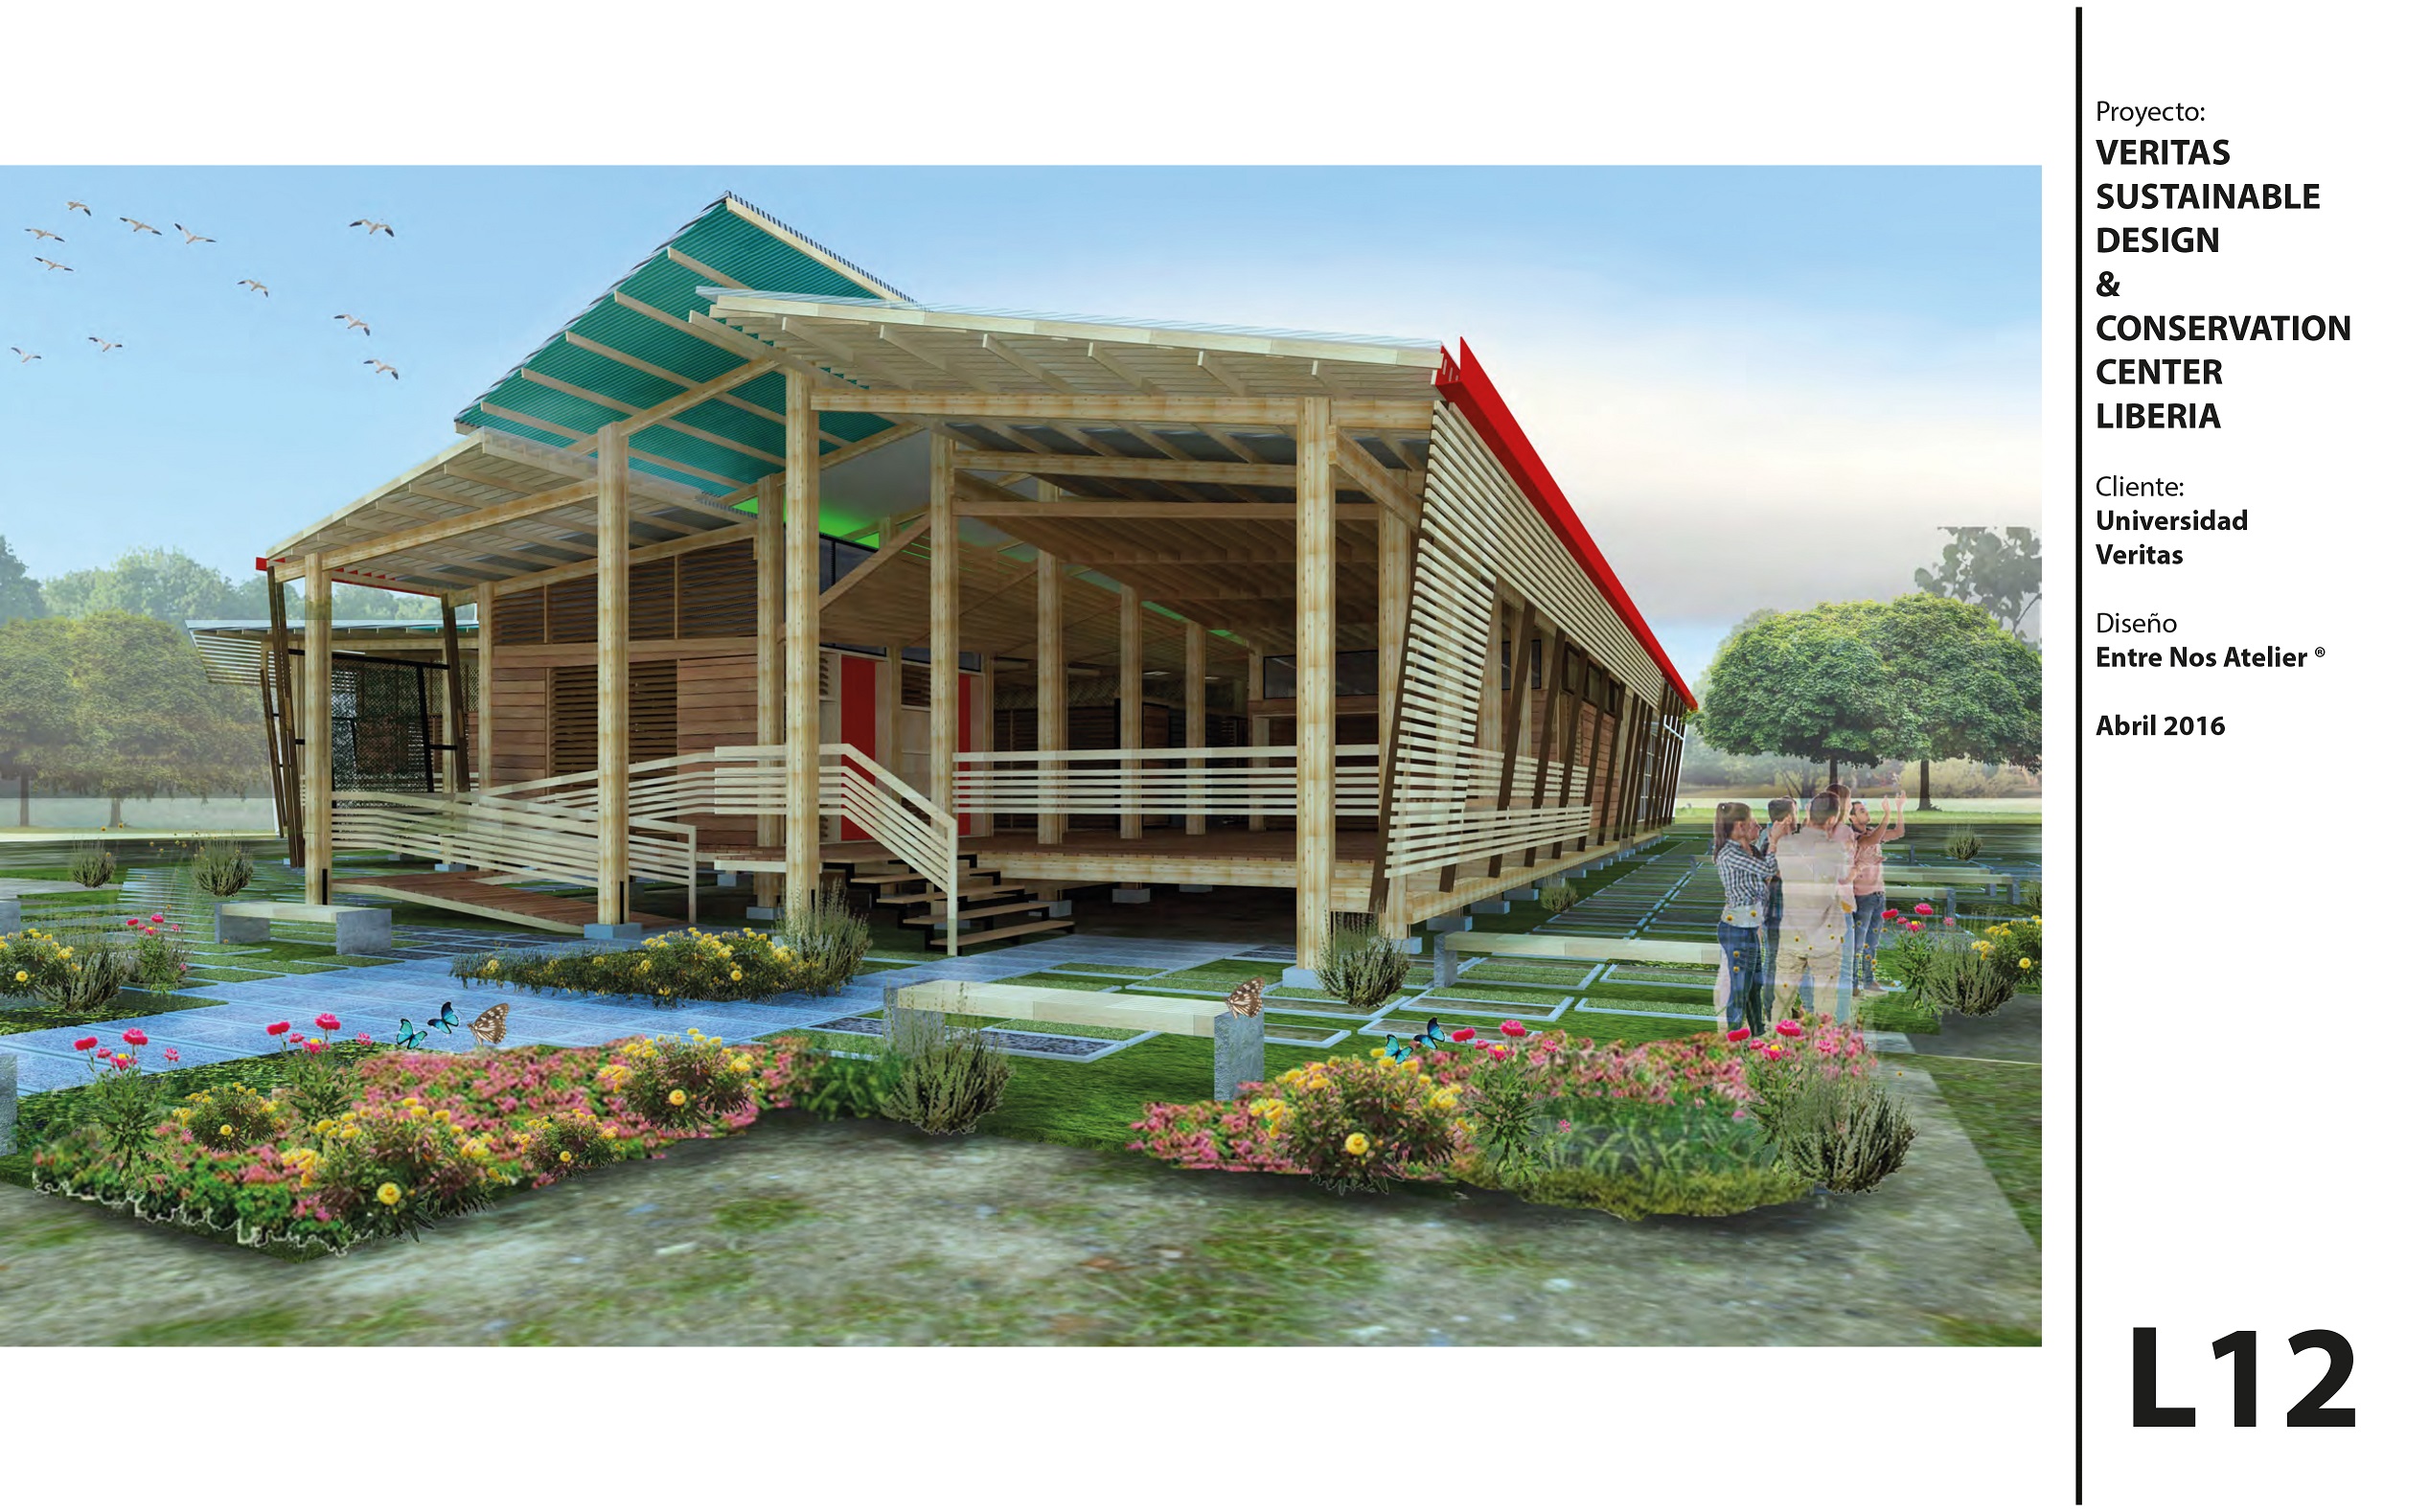 Veritas hará un Centro de Diseño Sostenible y Conservación en Guanacaste